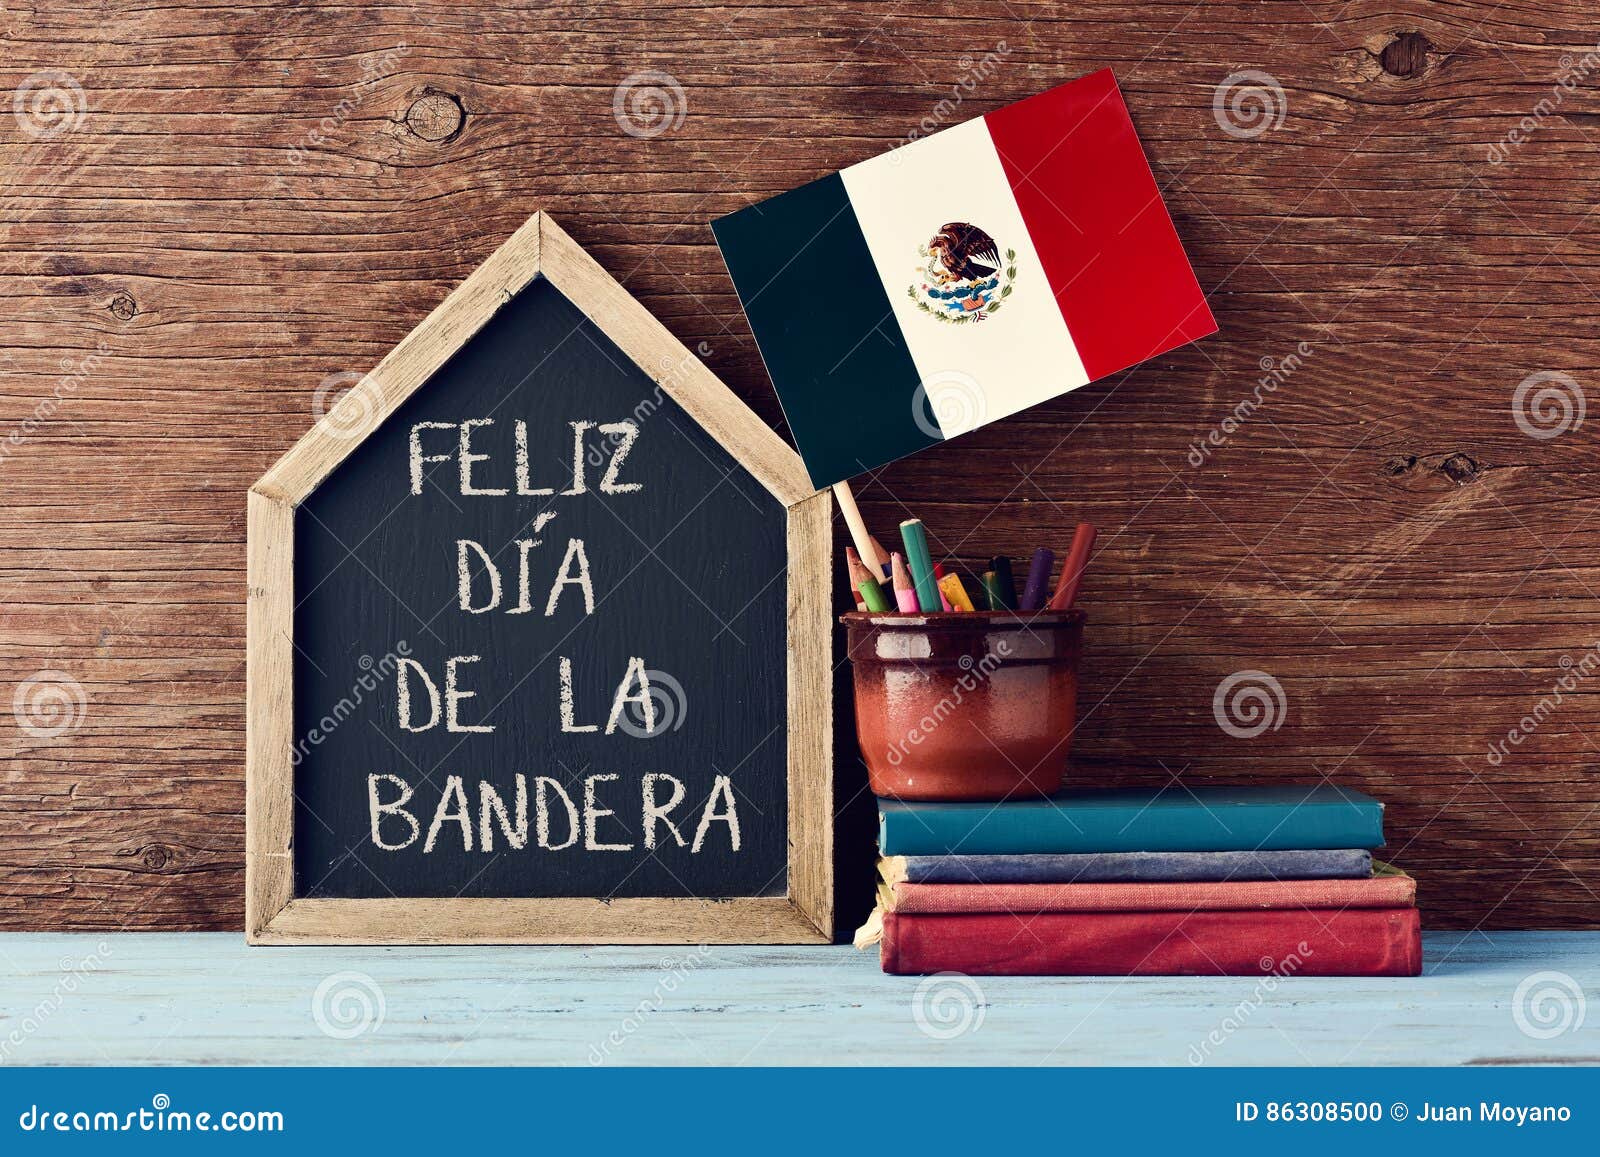 feliz dia de la bandera, happy flag day of mexico